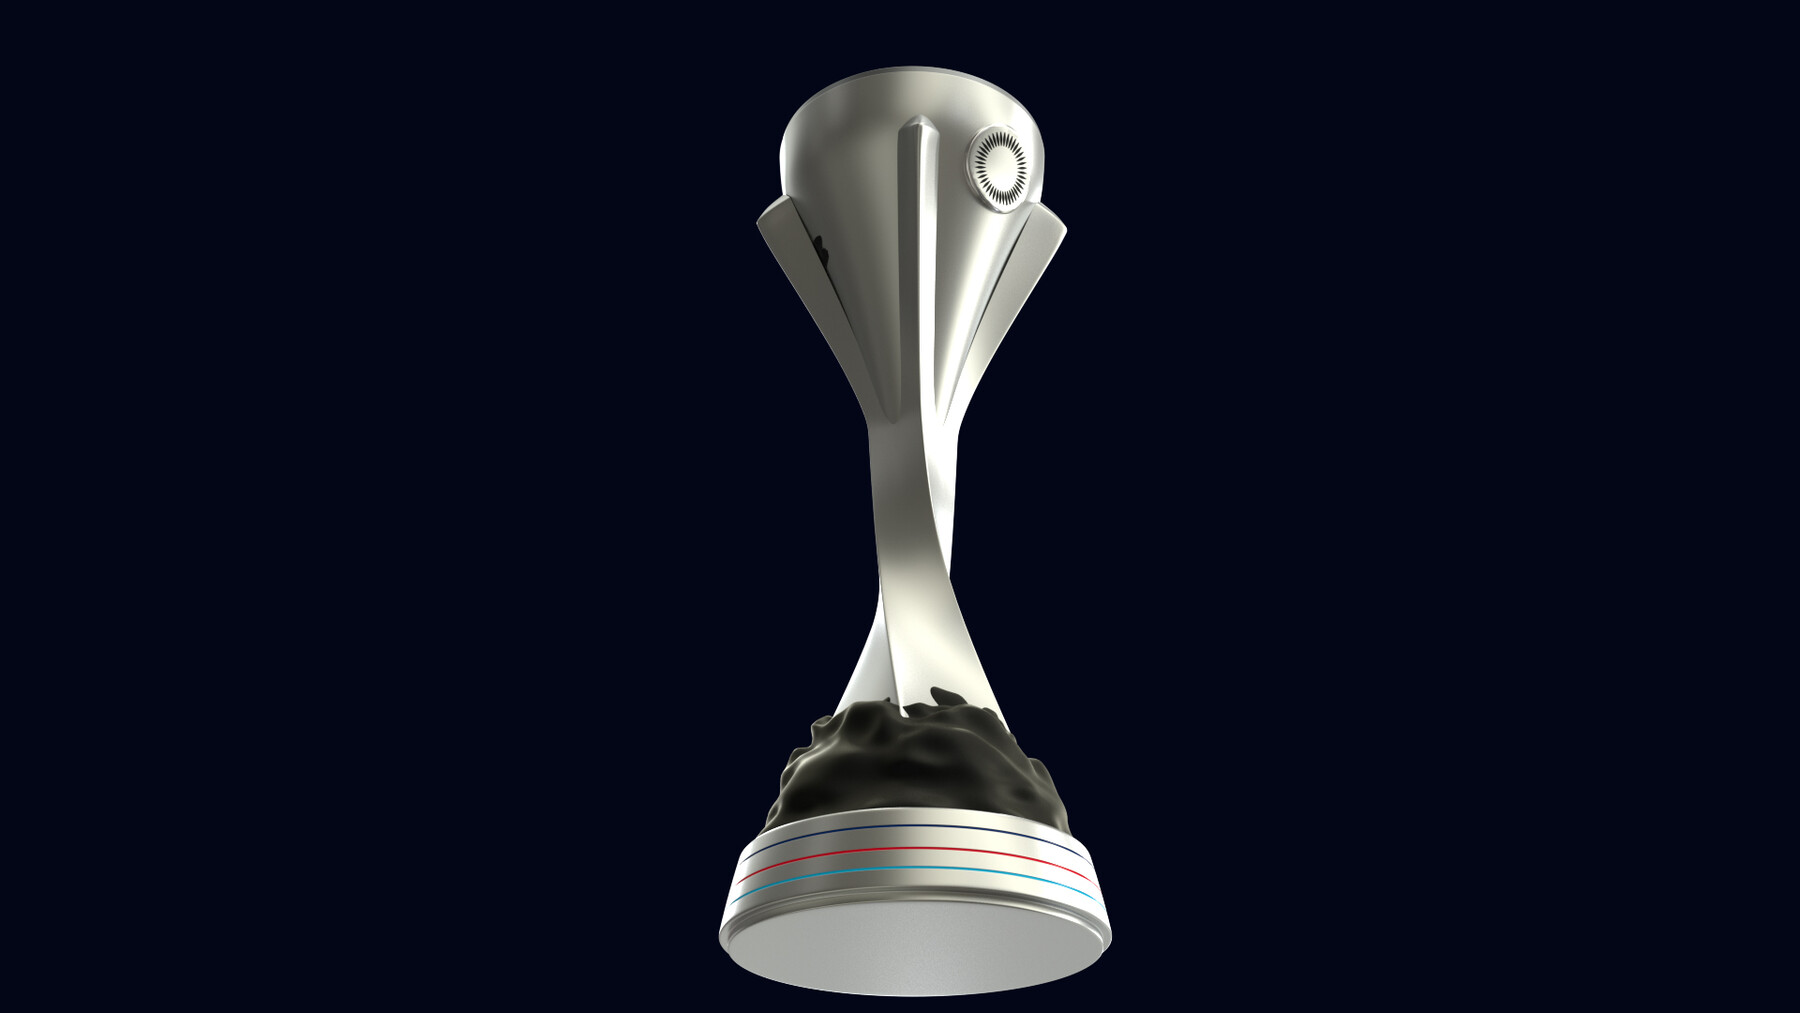 ArtStation - Concacaf Nations League Trophy 3D Model